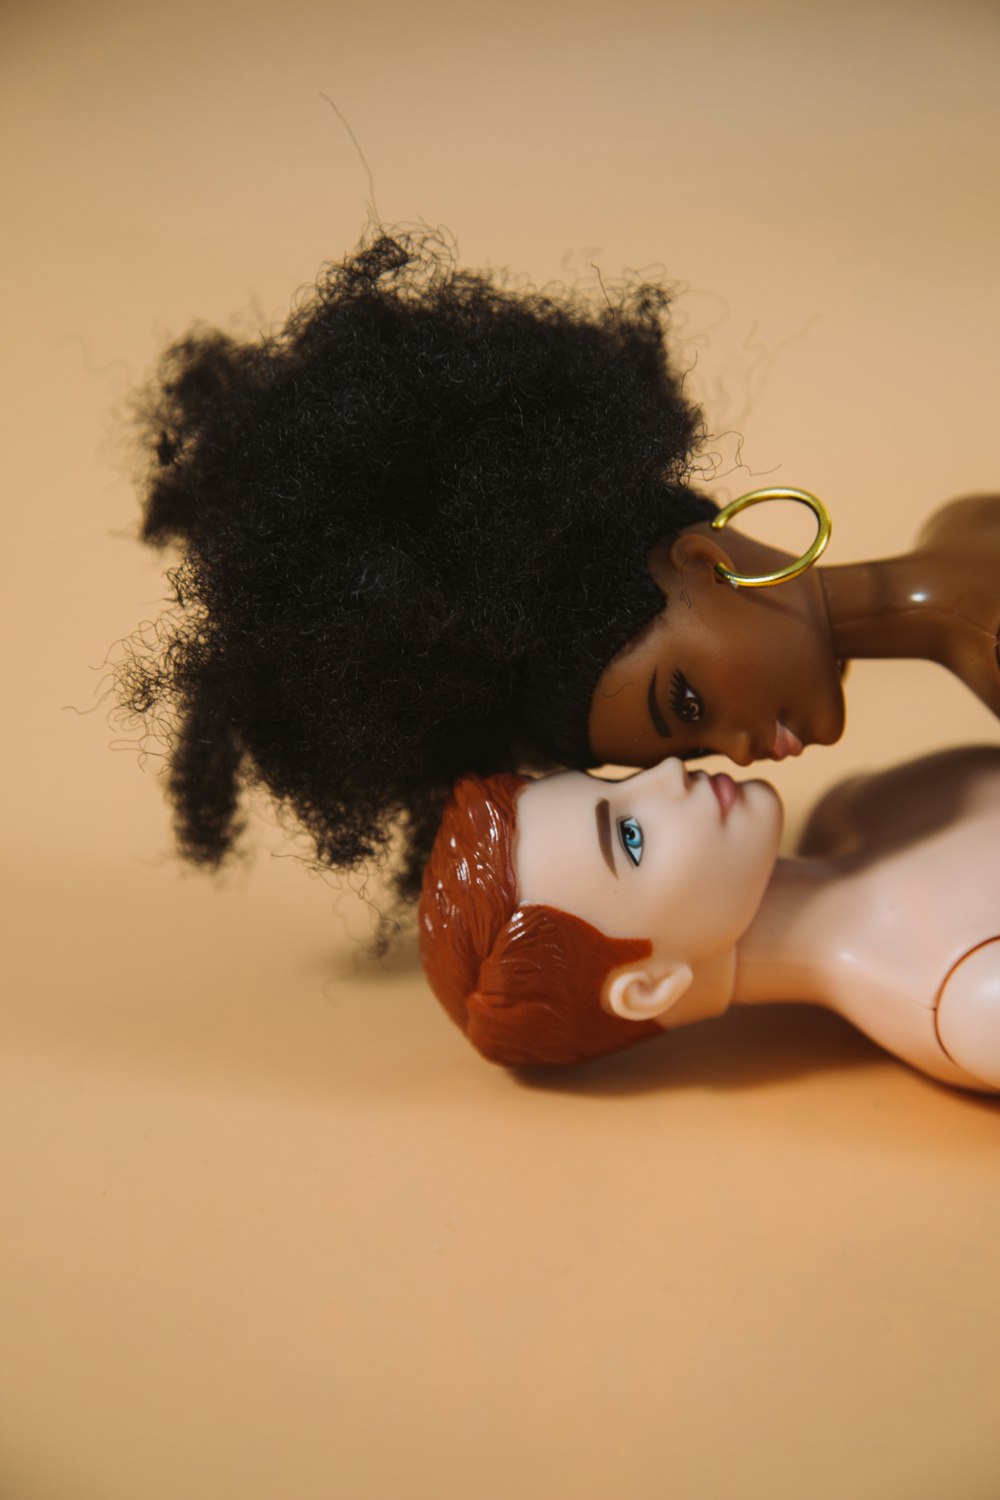 black haired doll on white ceramic sink